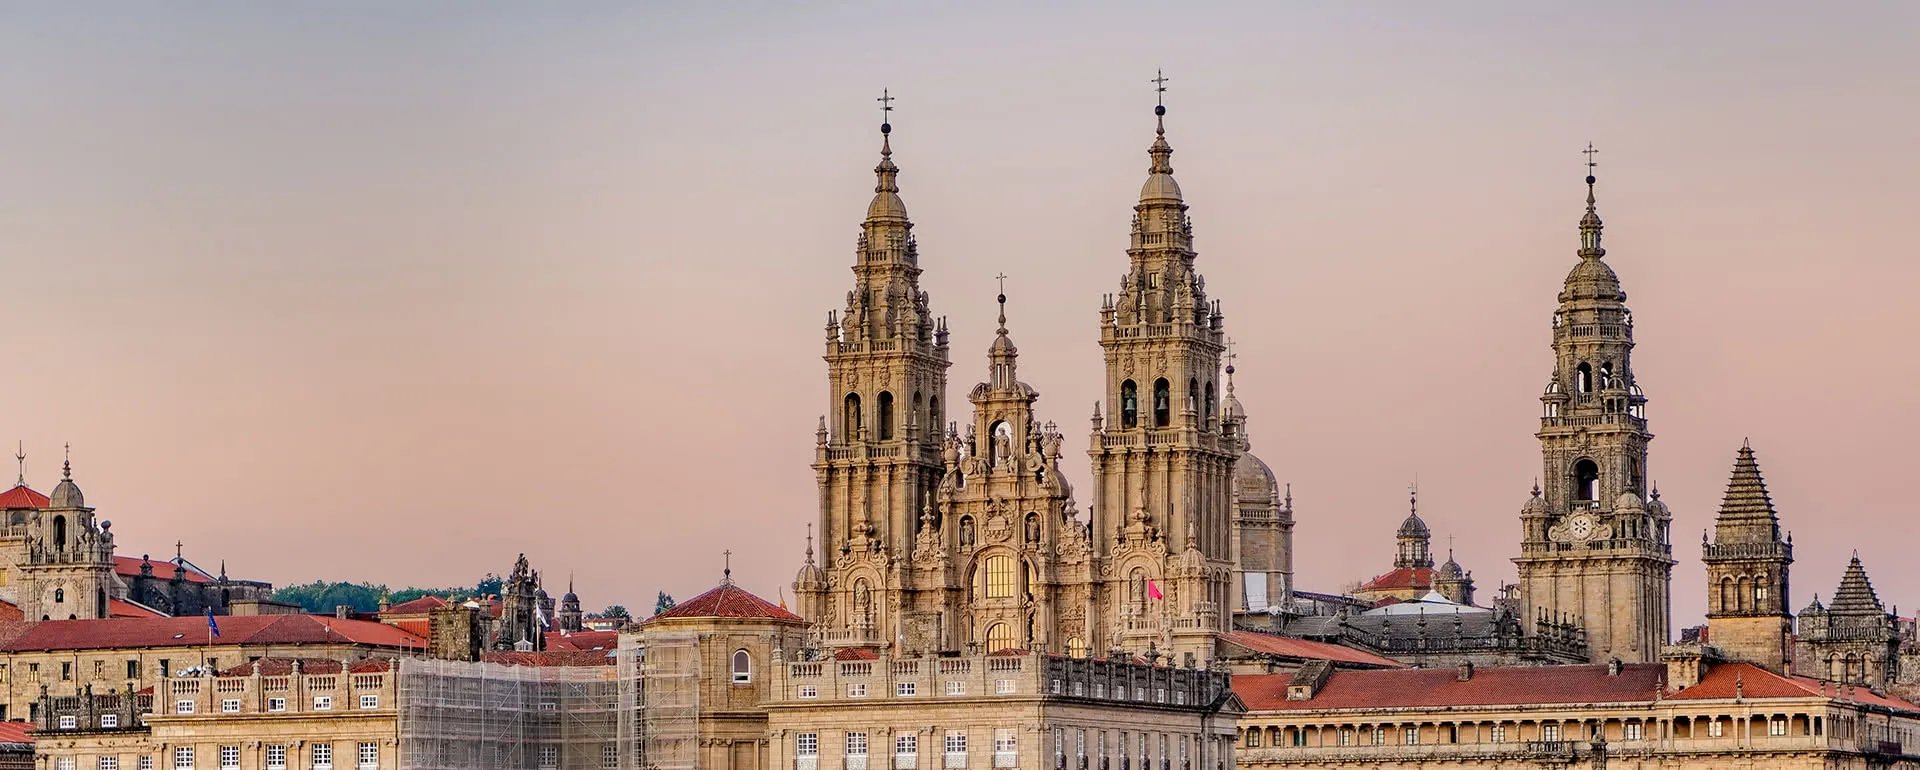 Santiago de Compostela - the destination with youth hostels